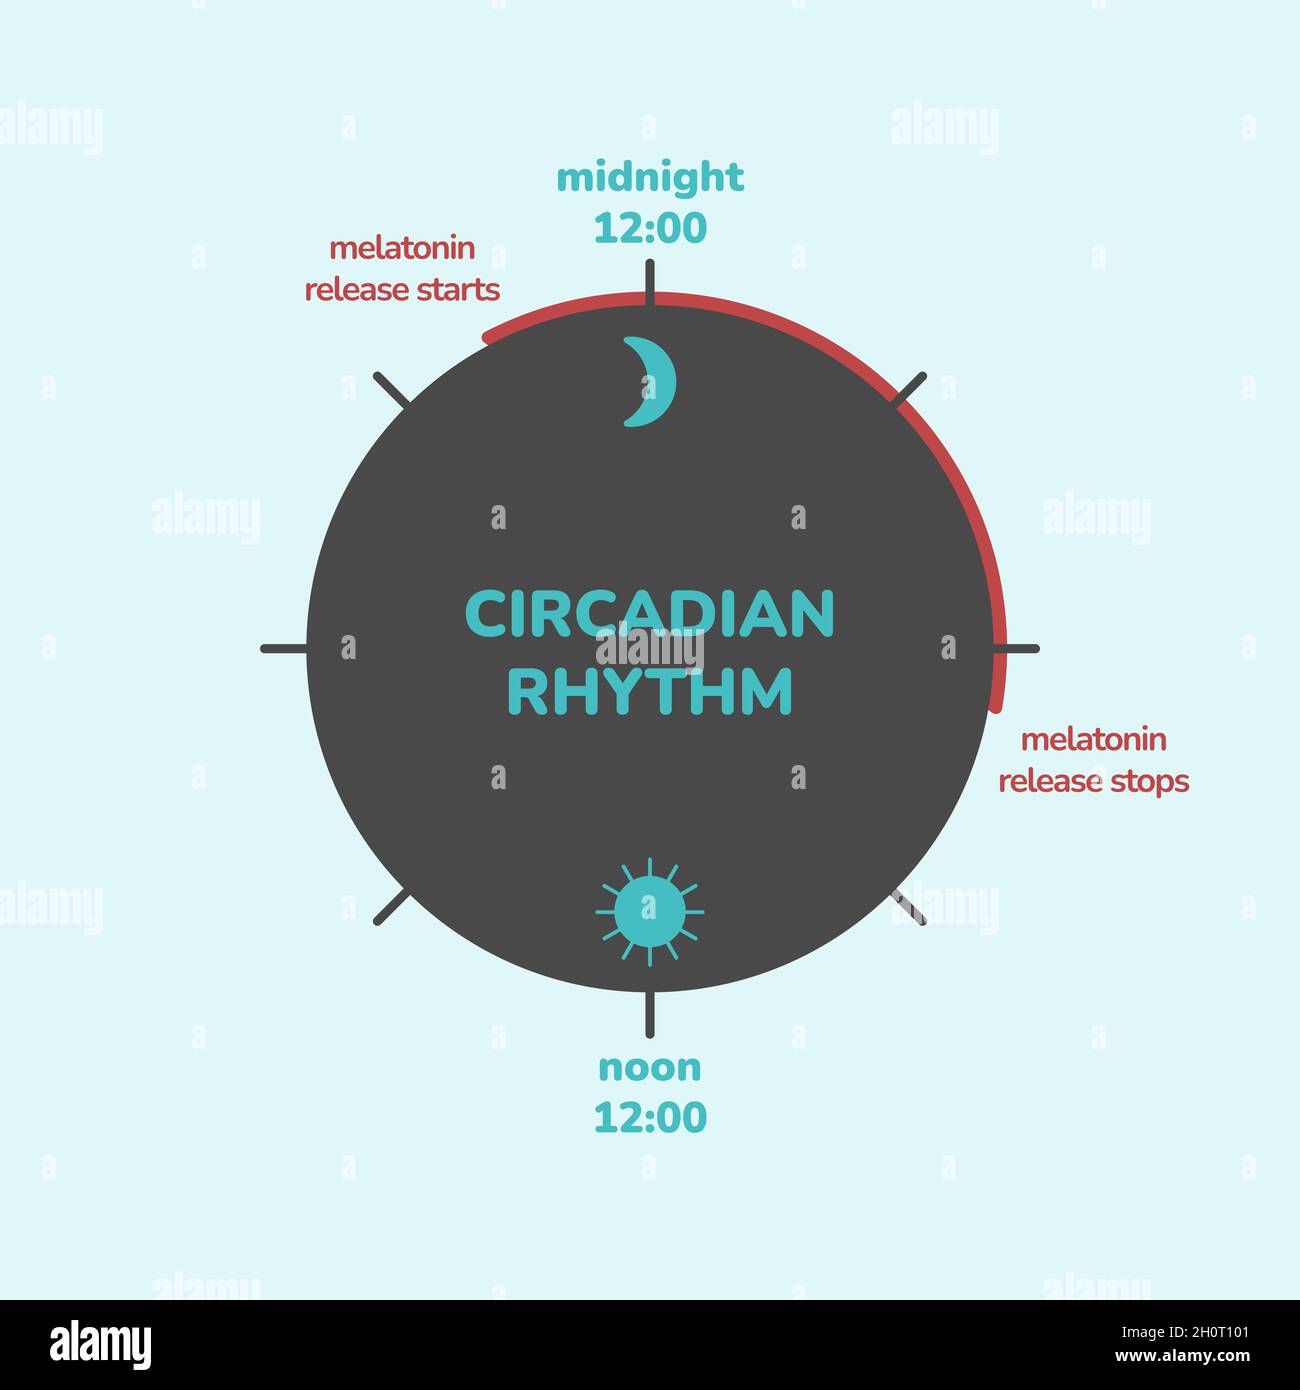 Konzept des zirkadianen Rhythmus. Infografik zur Freisetzung von Melatonin-Hormonen. Biologische Uhr des Menschen. Biodynamik und leichtes Timing. Stock Vektor